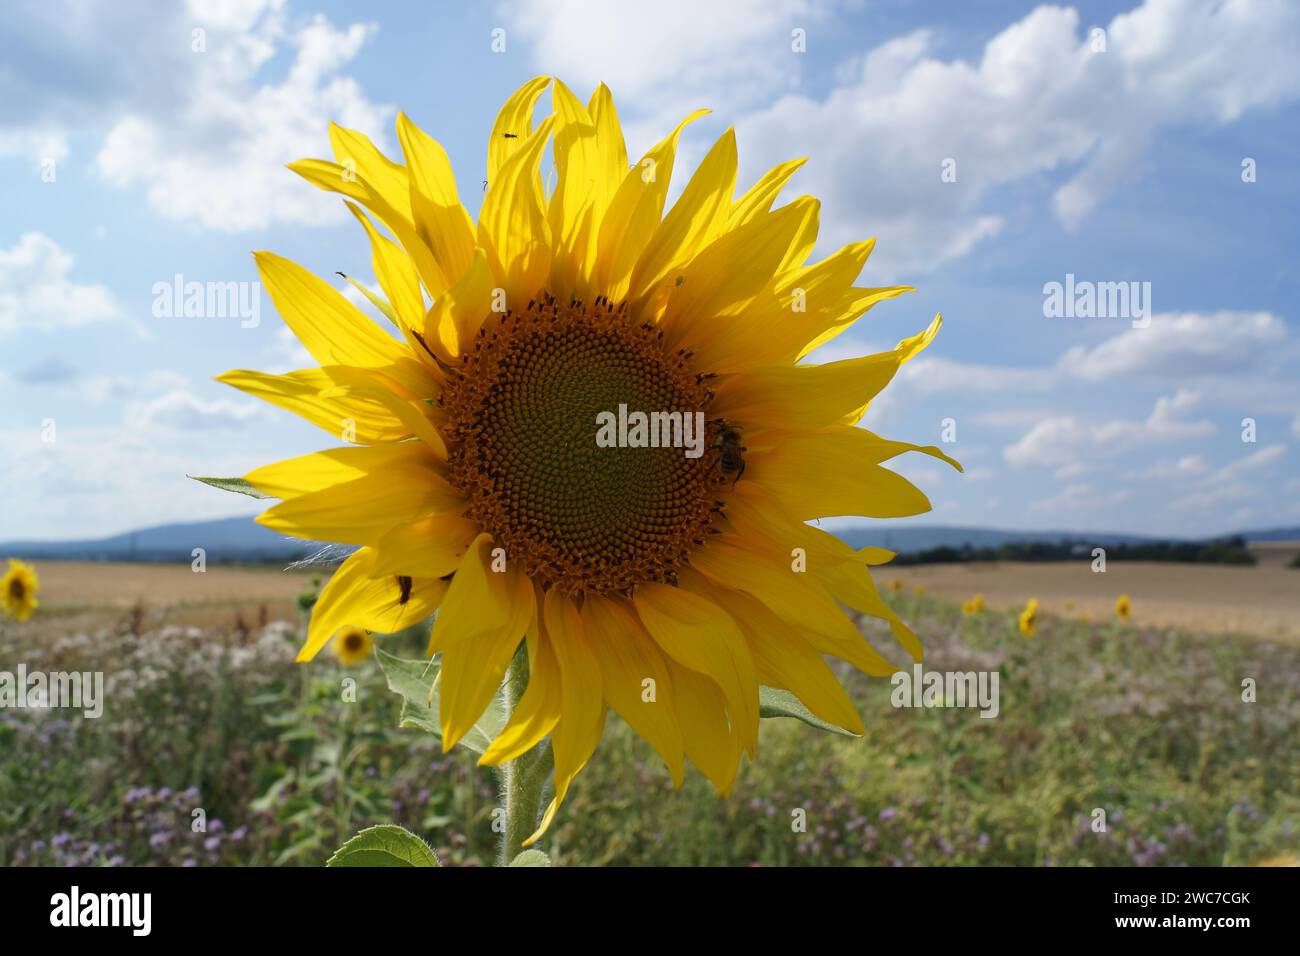 Floraison d'un tournesol dans une bande de fleurs sauvages au bord d'un champ en contre-jour avec un bourdon. Un ciel bleu-blanc ensoleillé. Banque D'Images